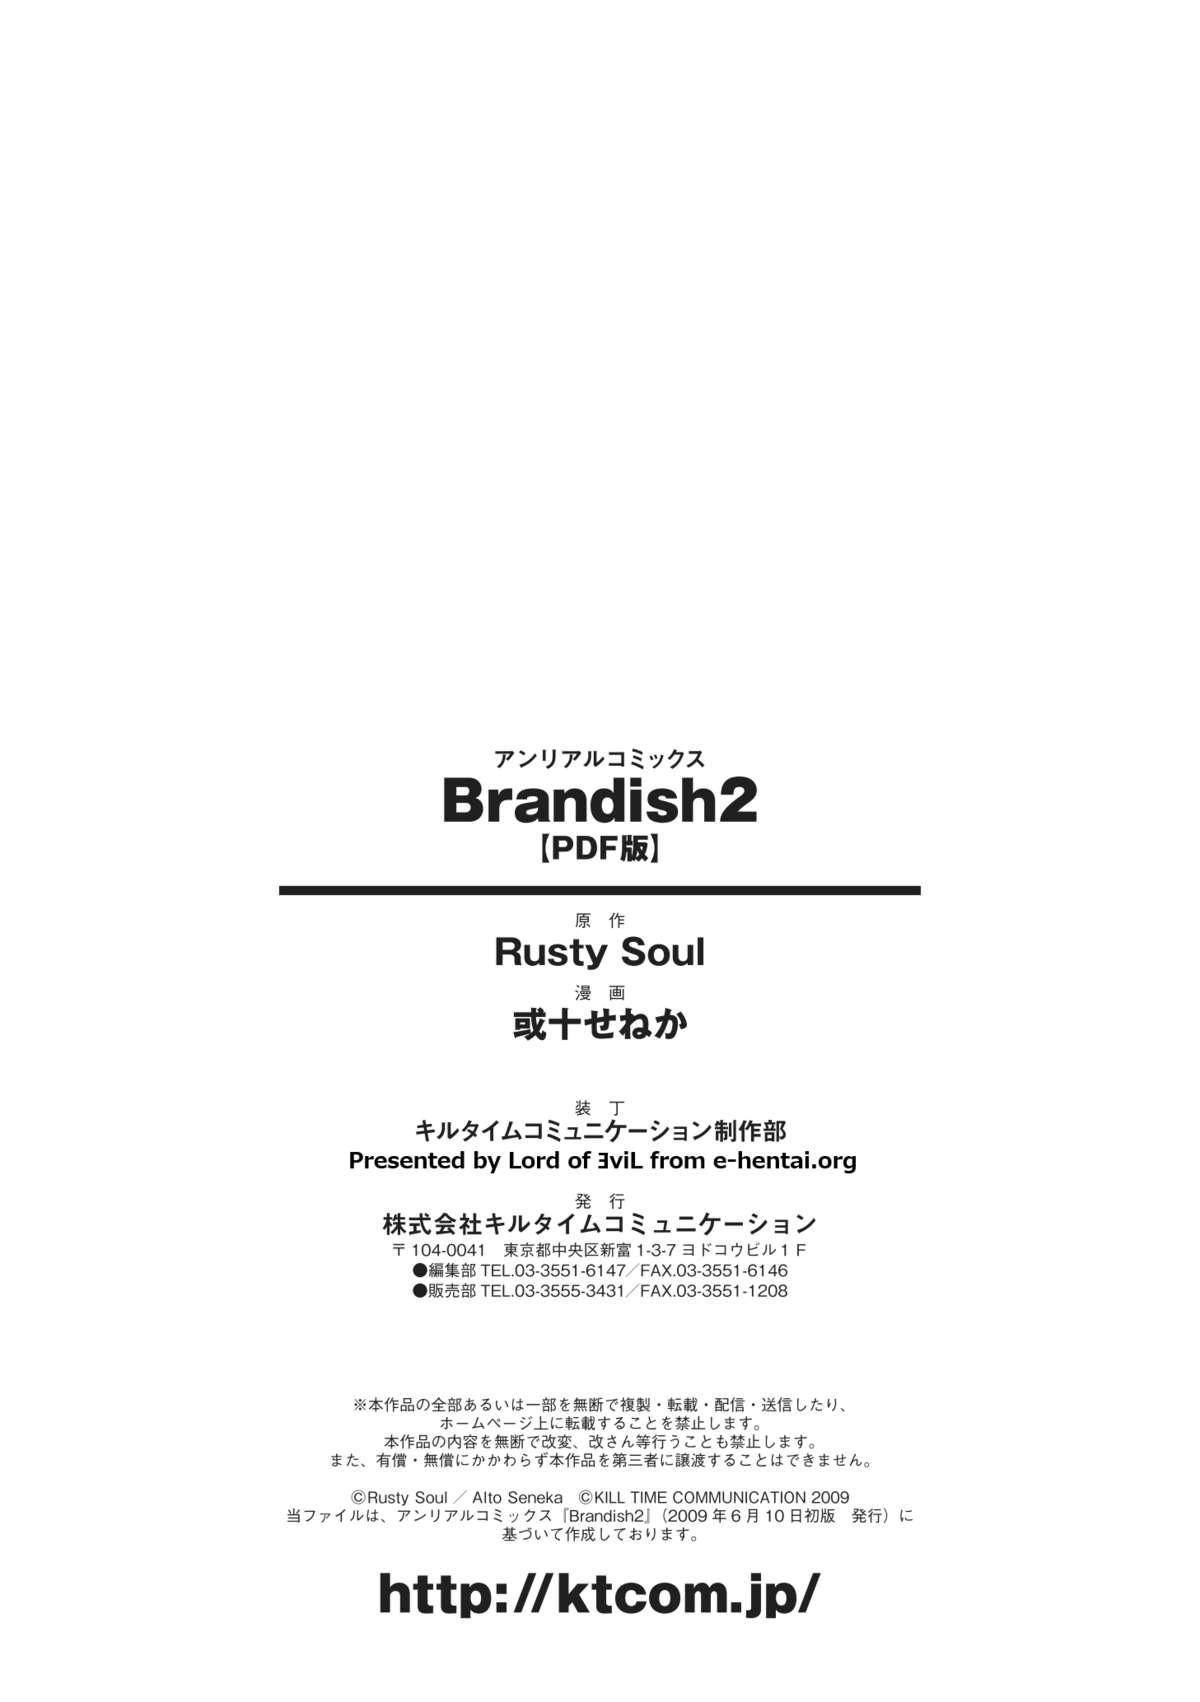 Brandish 2 185